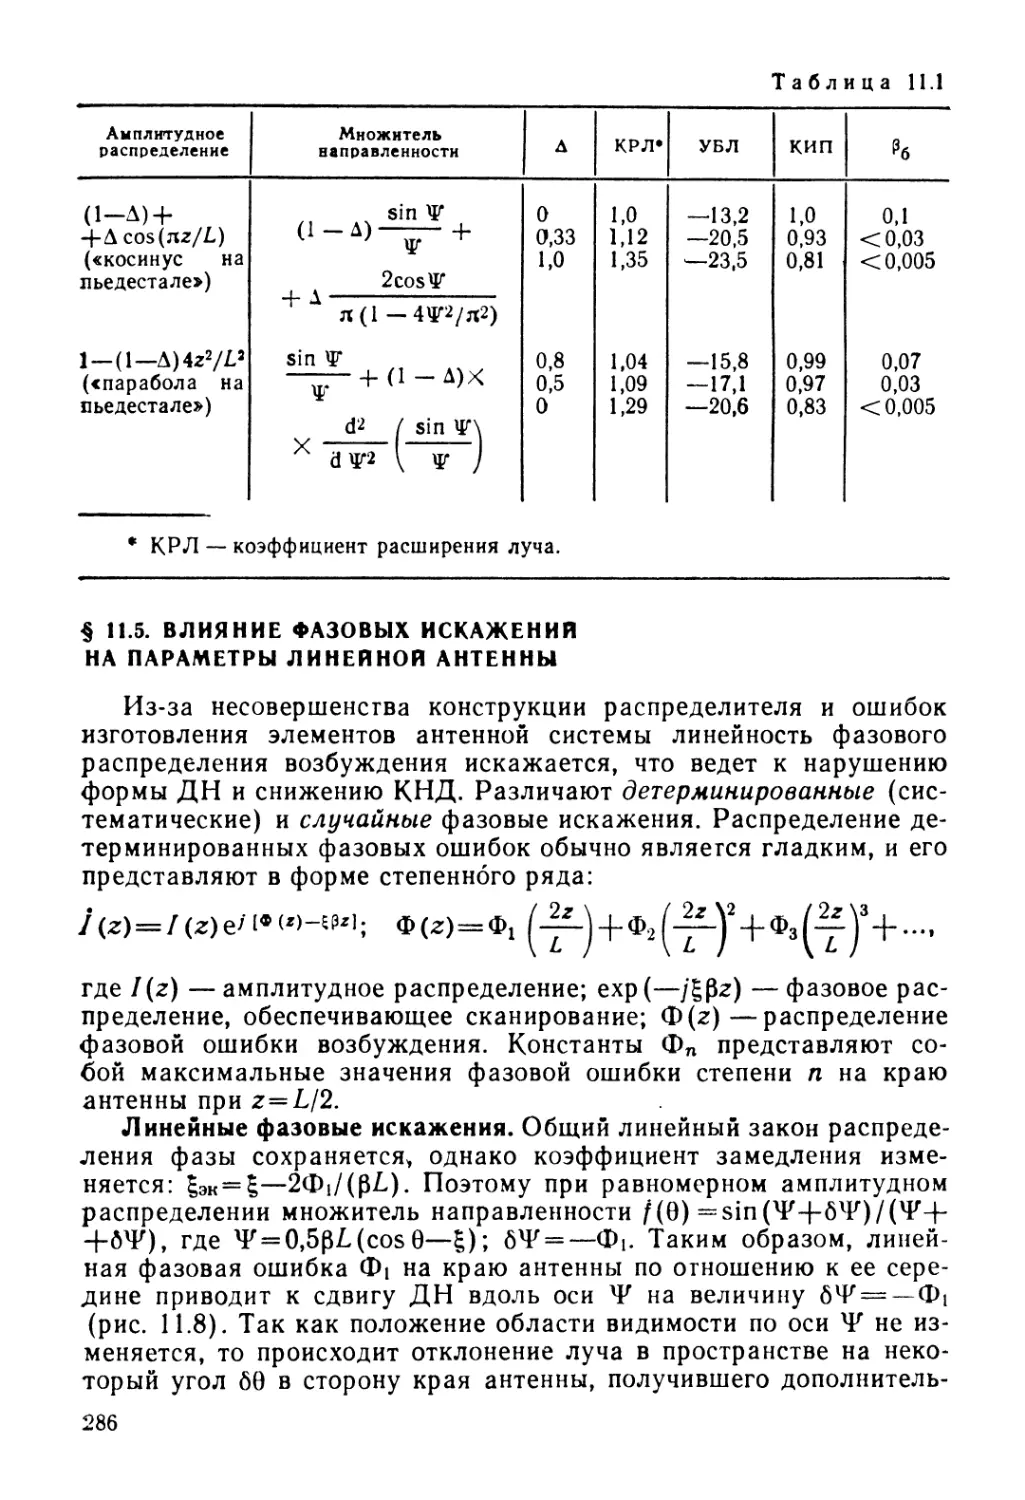 § 11.5. Влияние фазовых искажений на параметры линейной антенны